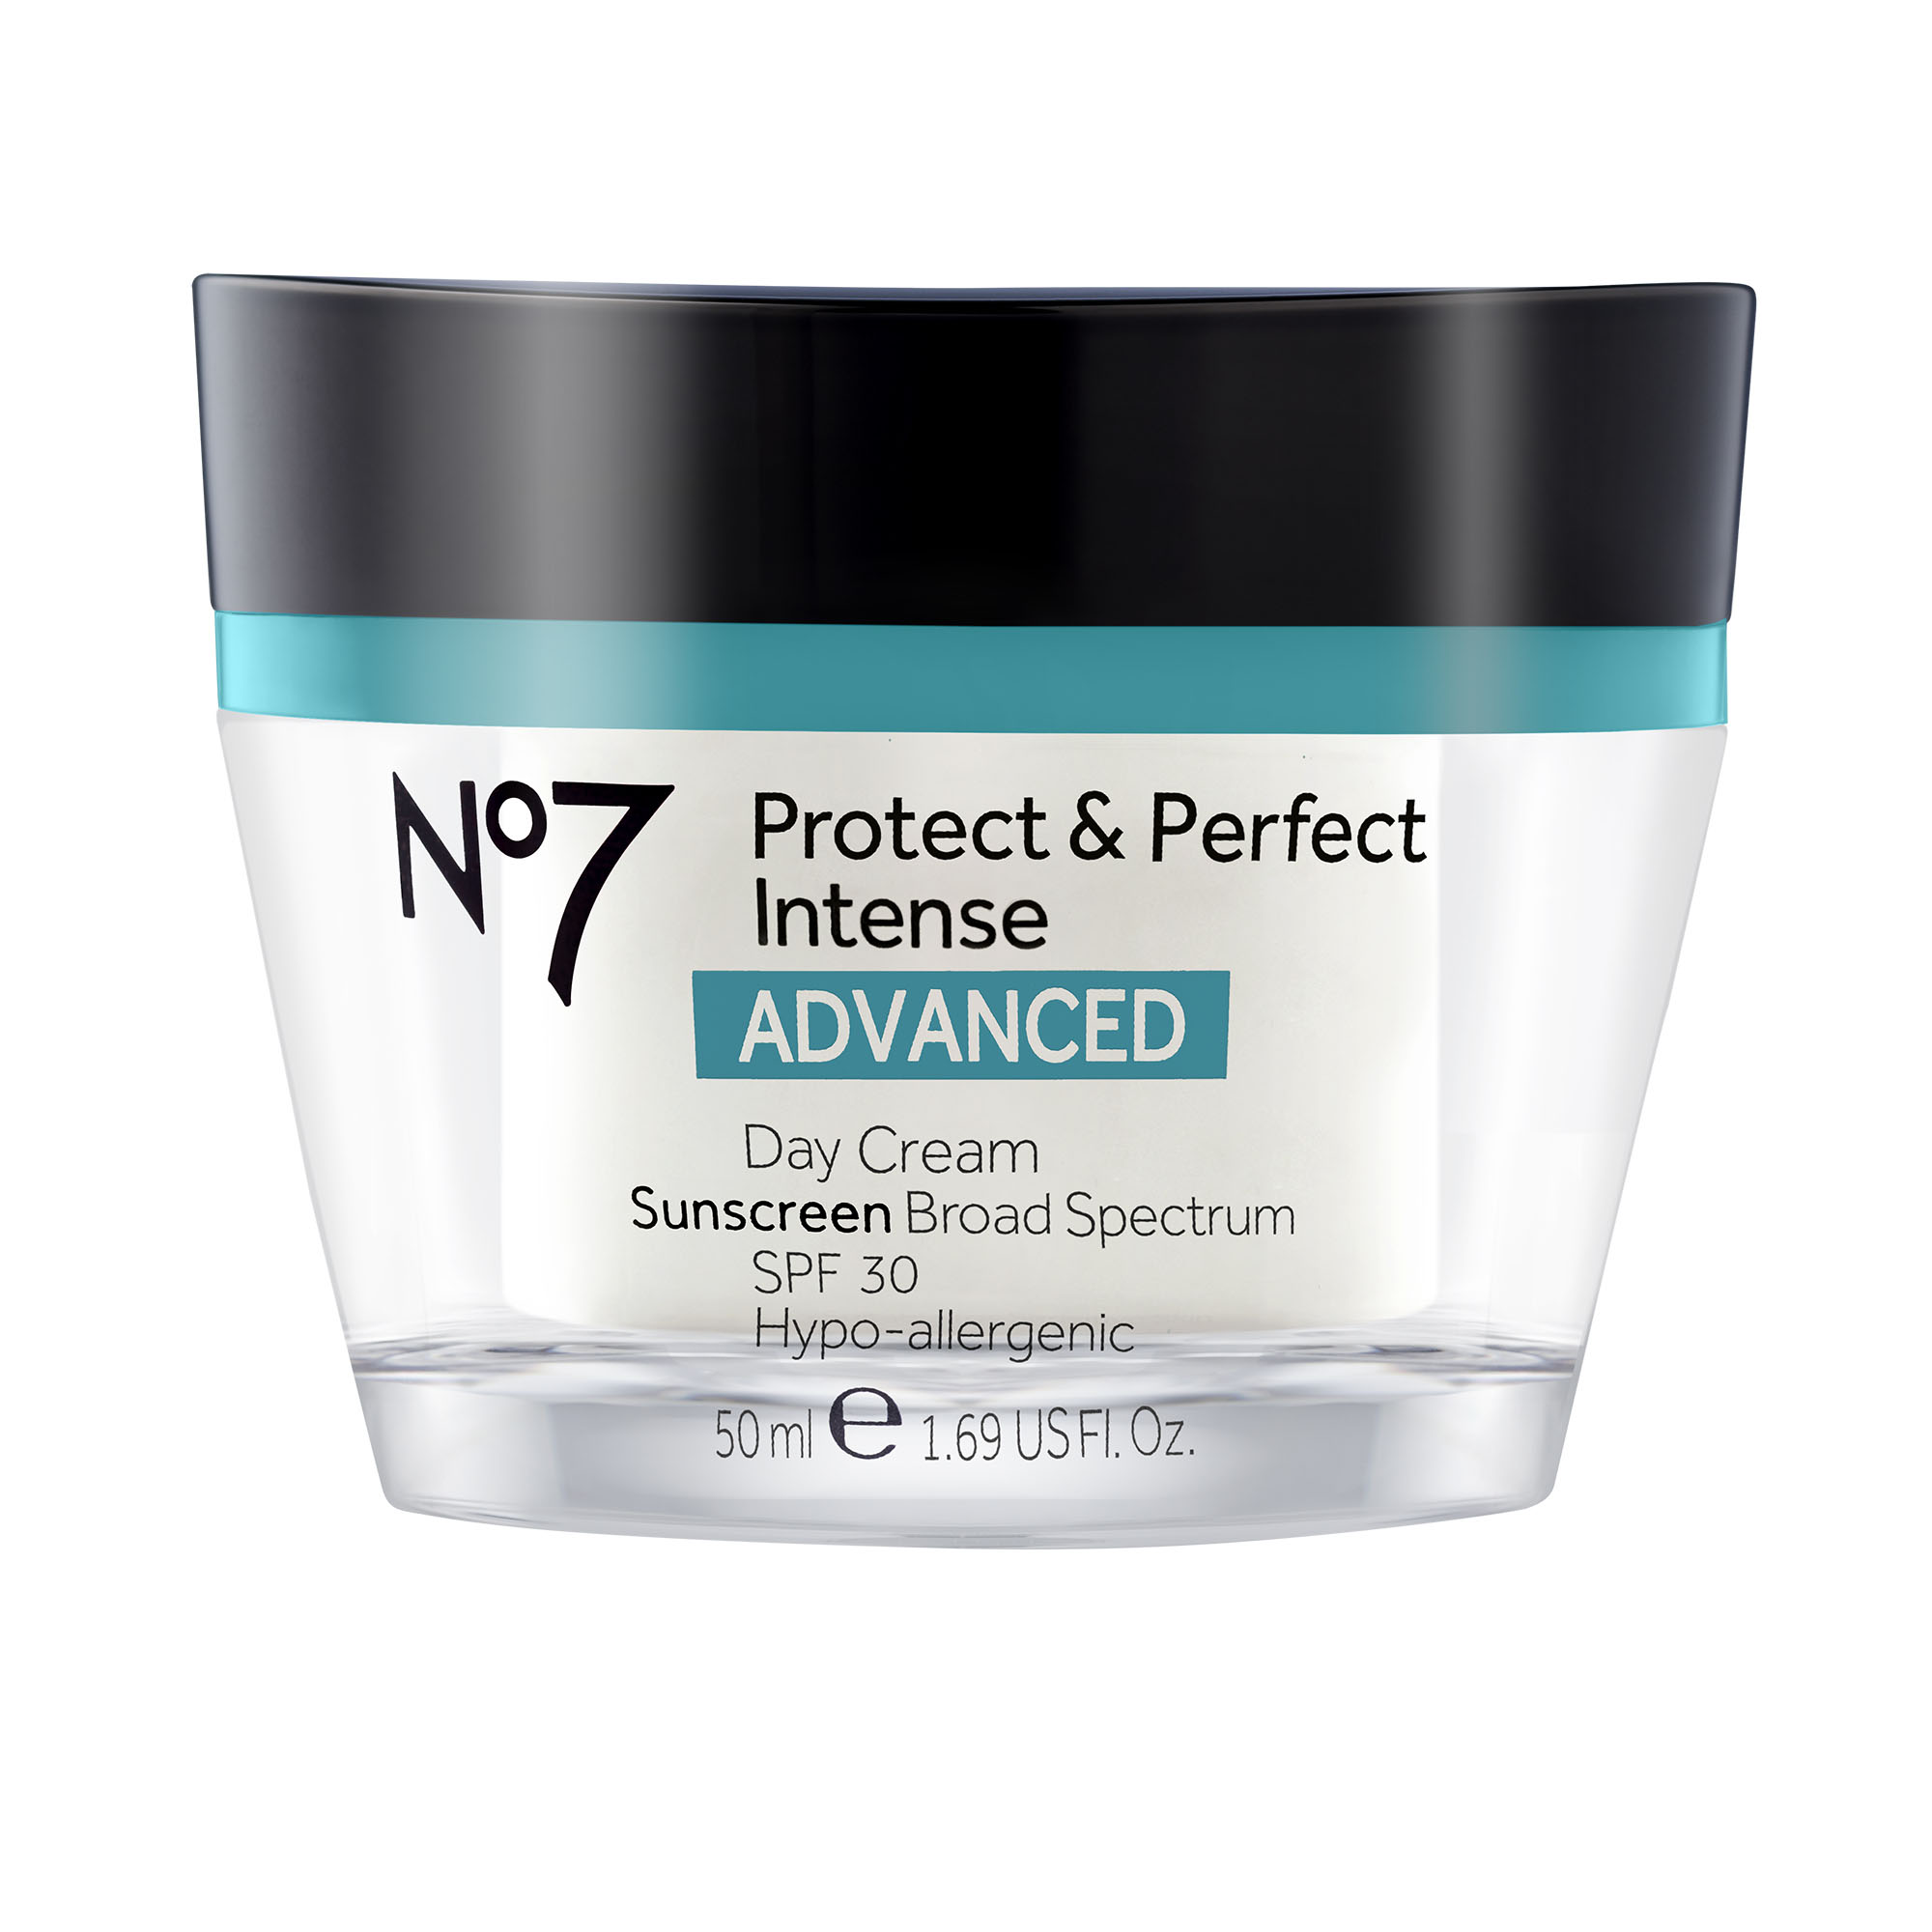 NO7 Protect & Perfect Intense Advanced Day Cream, SPF 30, 1.69 fl oz - image 1 of 8